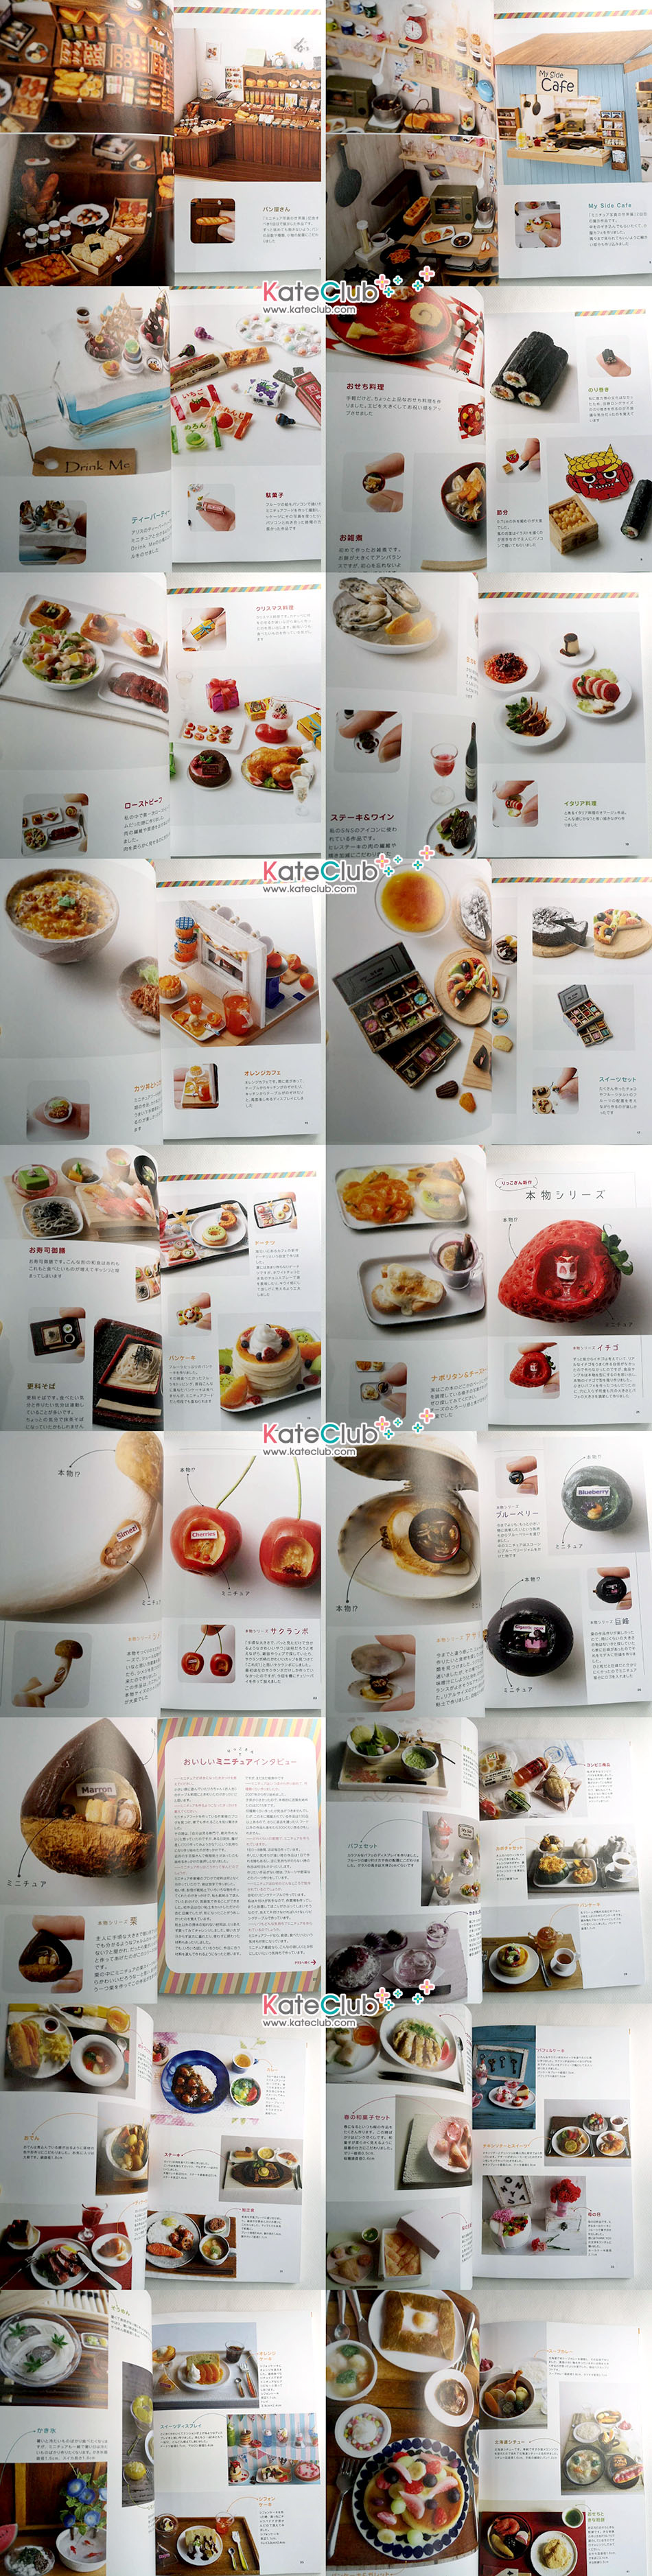 หนังสือสอนปั้นอาหารจิ๋ว rikko's delicious miniature